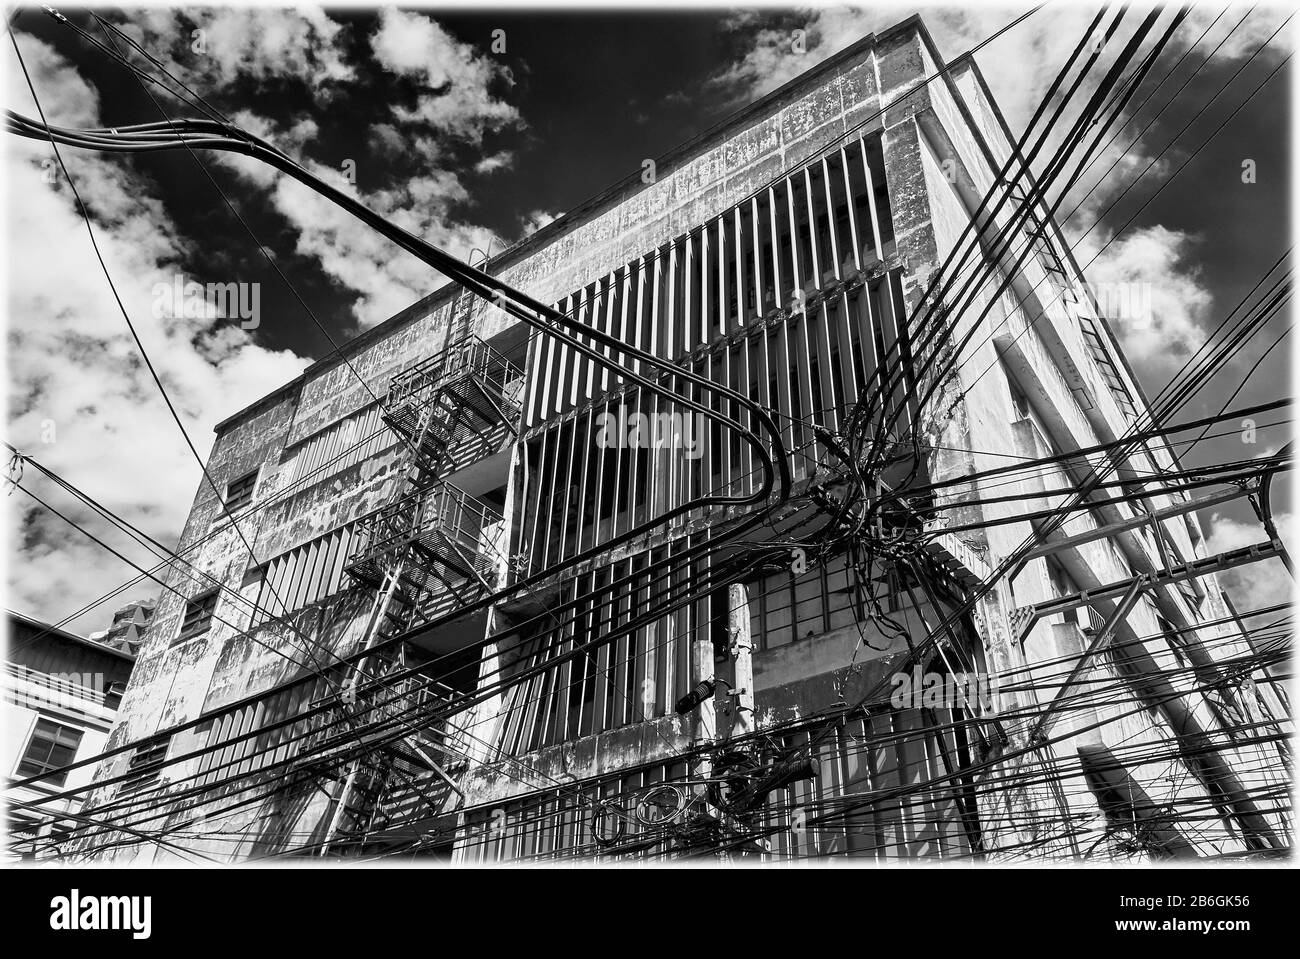 Vista in bianco e nero su un vecchio edificio commerciale e un caos di cavi, linee elettriche nel quartiere cinese di Binondo, Manila, Filippine Foto Stock